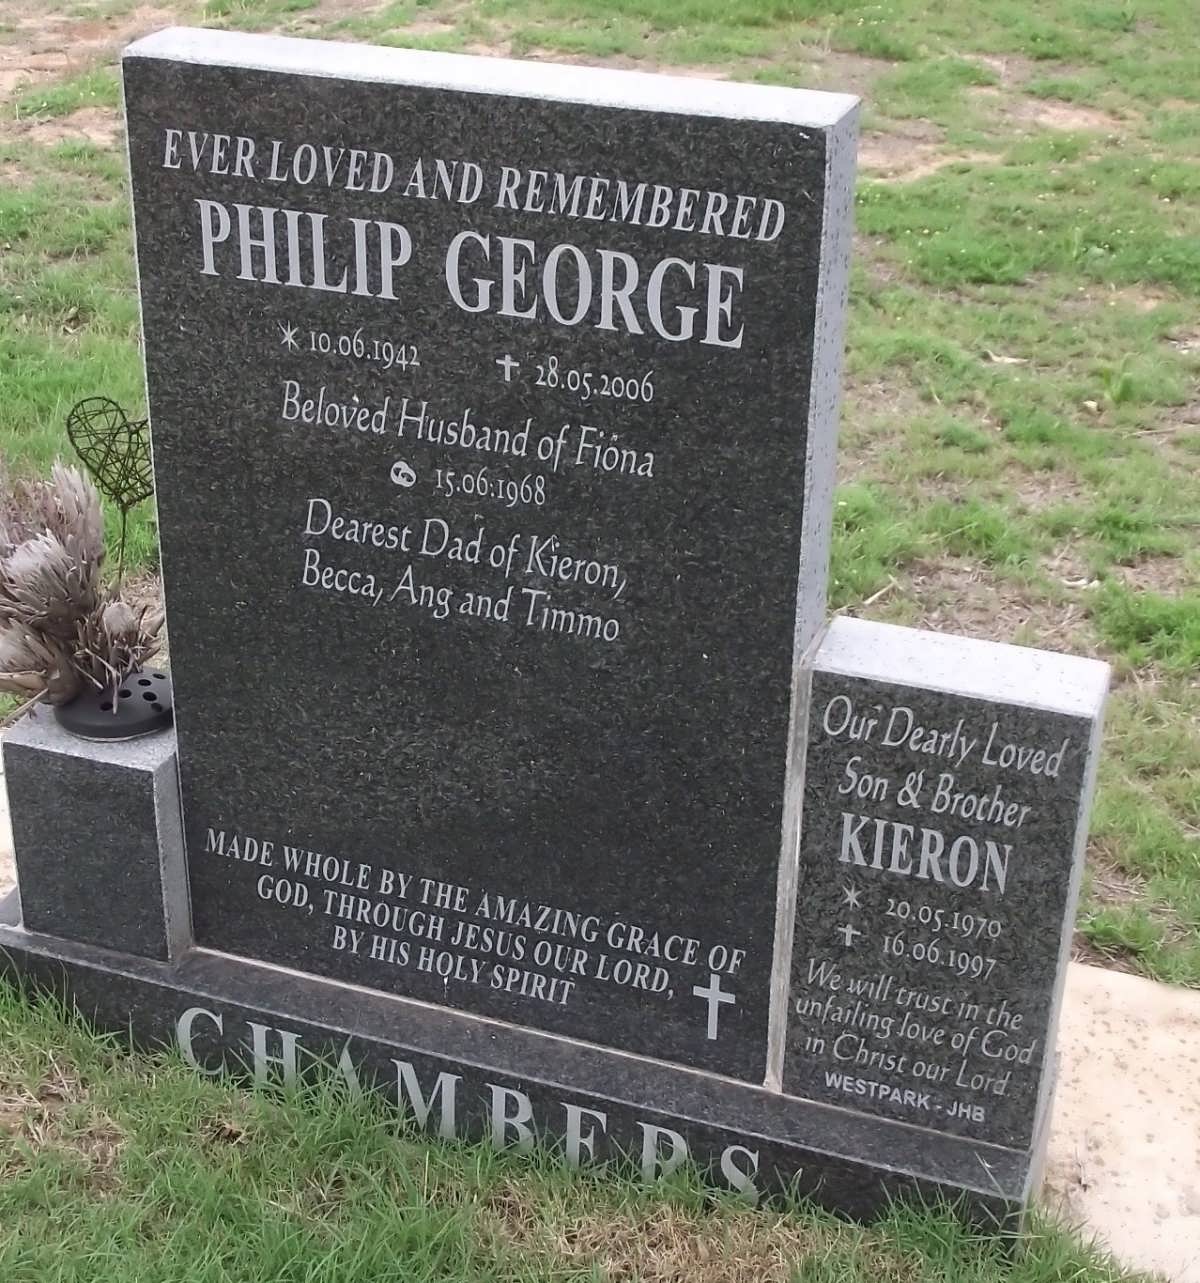 CHAMBERS Philip George 1942-2006 :: CHAMBERS Kieron 1970-1997